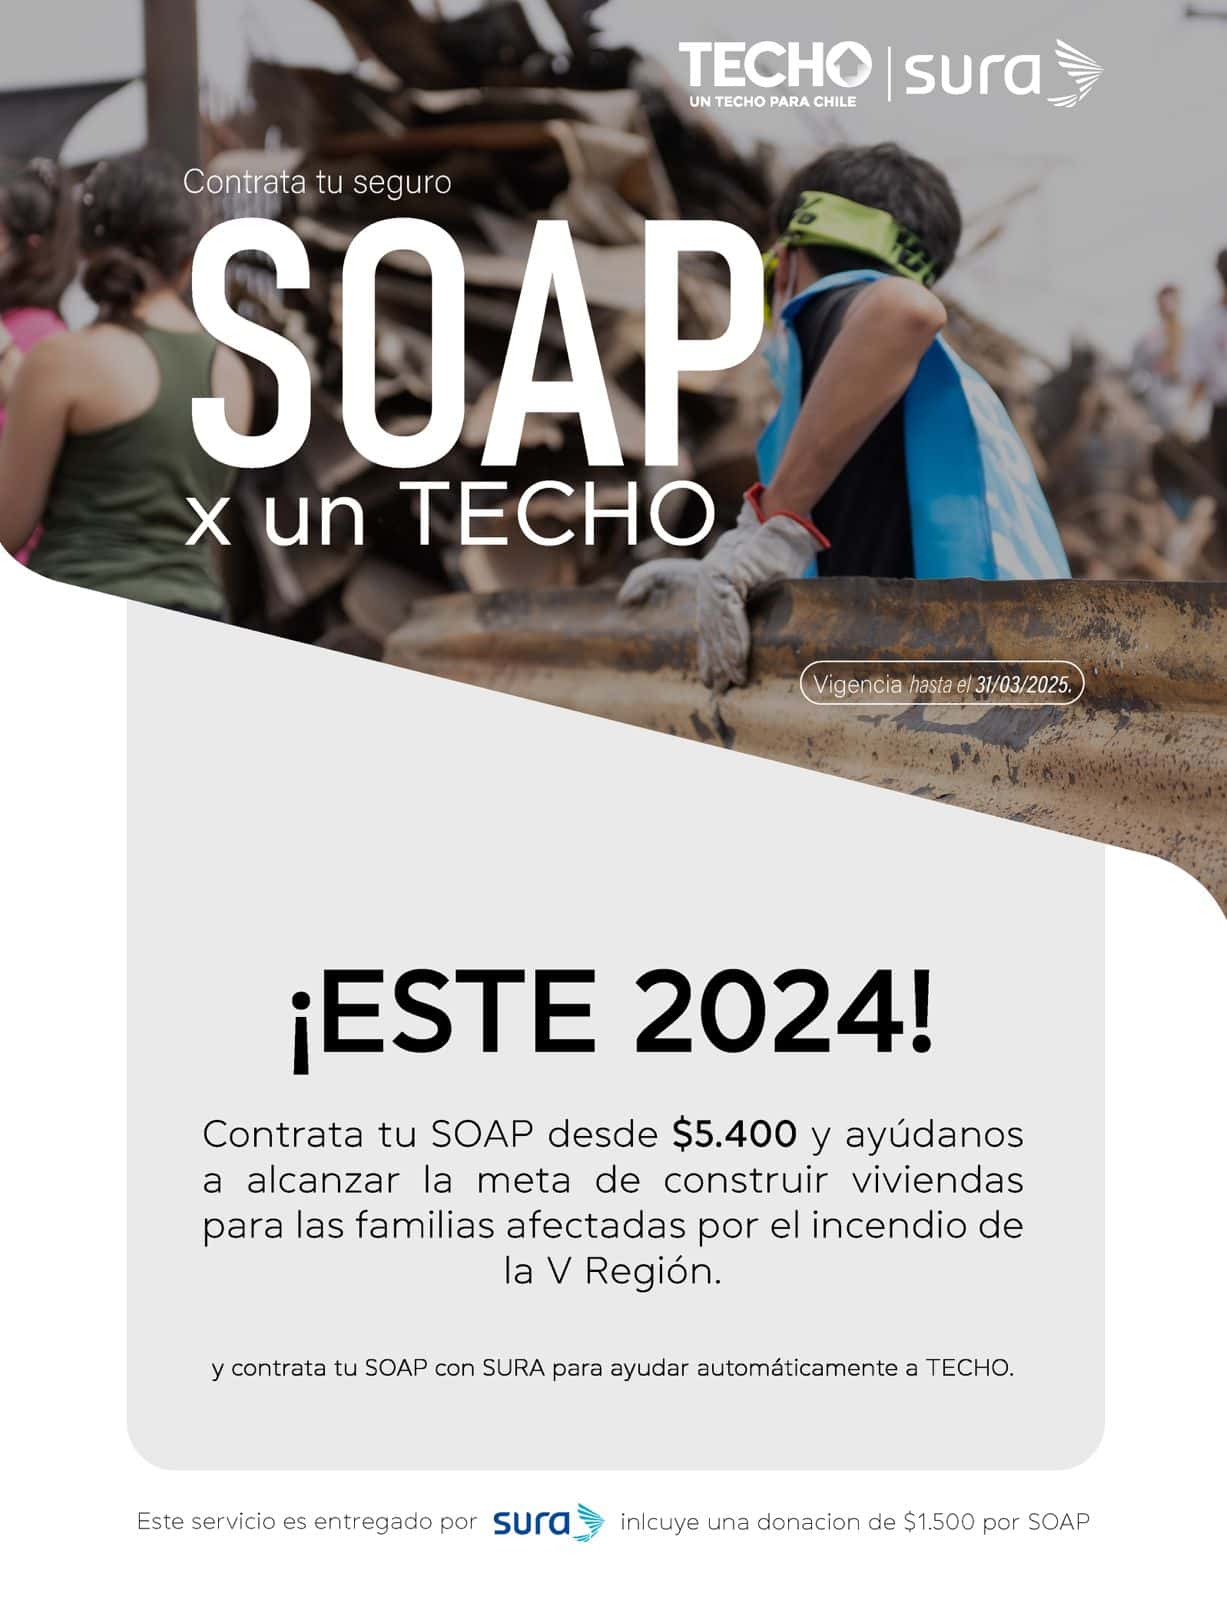 ¡ESTE 2024! Contrata tu SOAP desde $5.400 y ayúdanos a alcanzar la meta de construir viviendas para las familias afectadas por el incendio de la V Región.